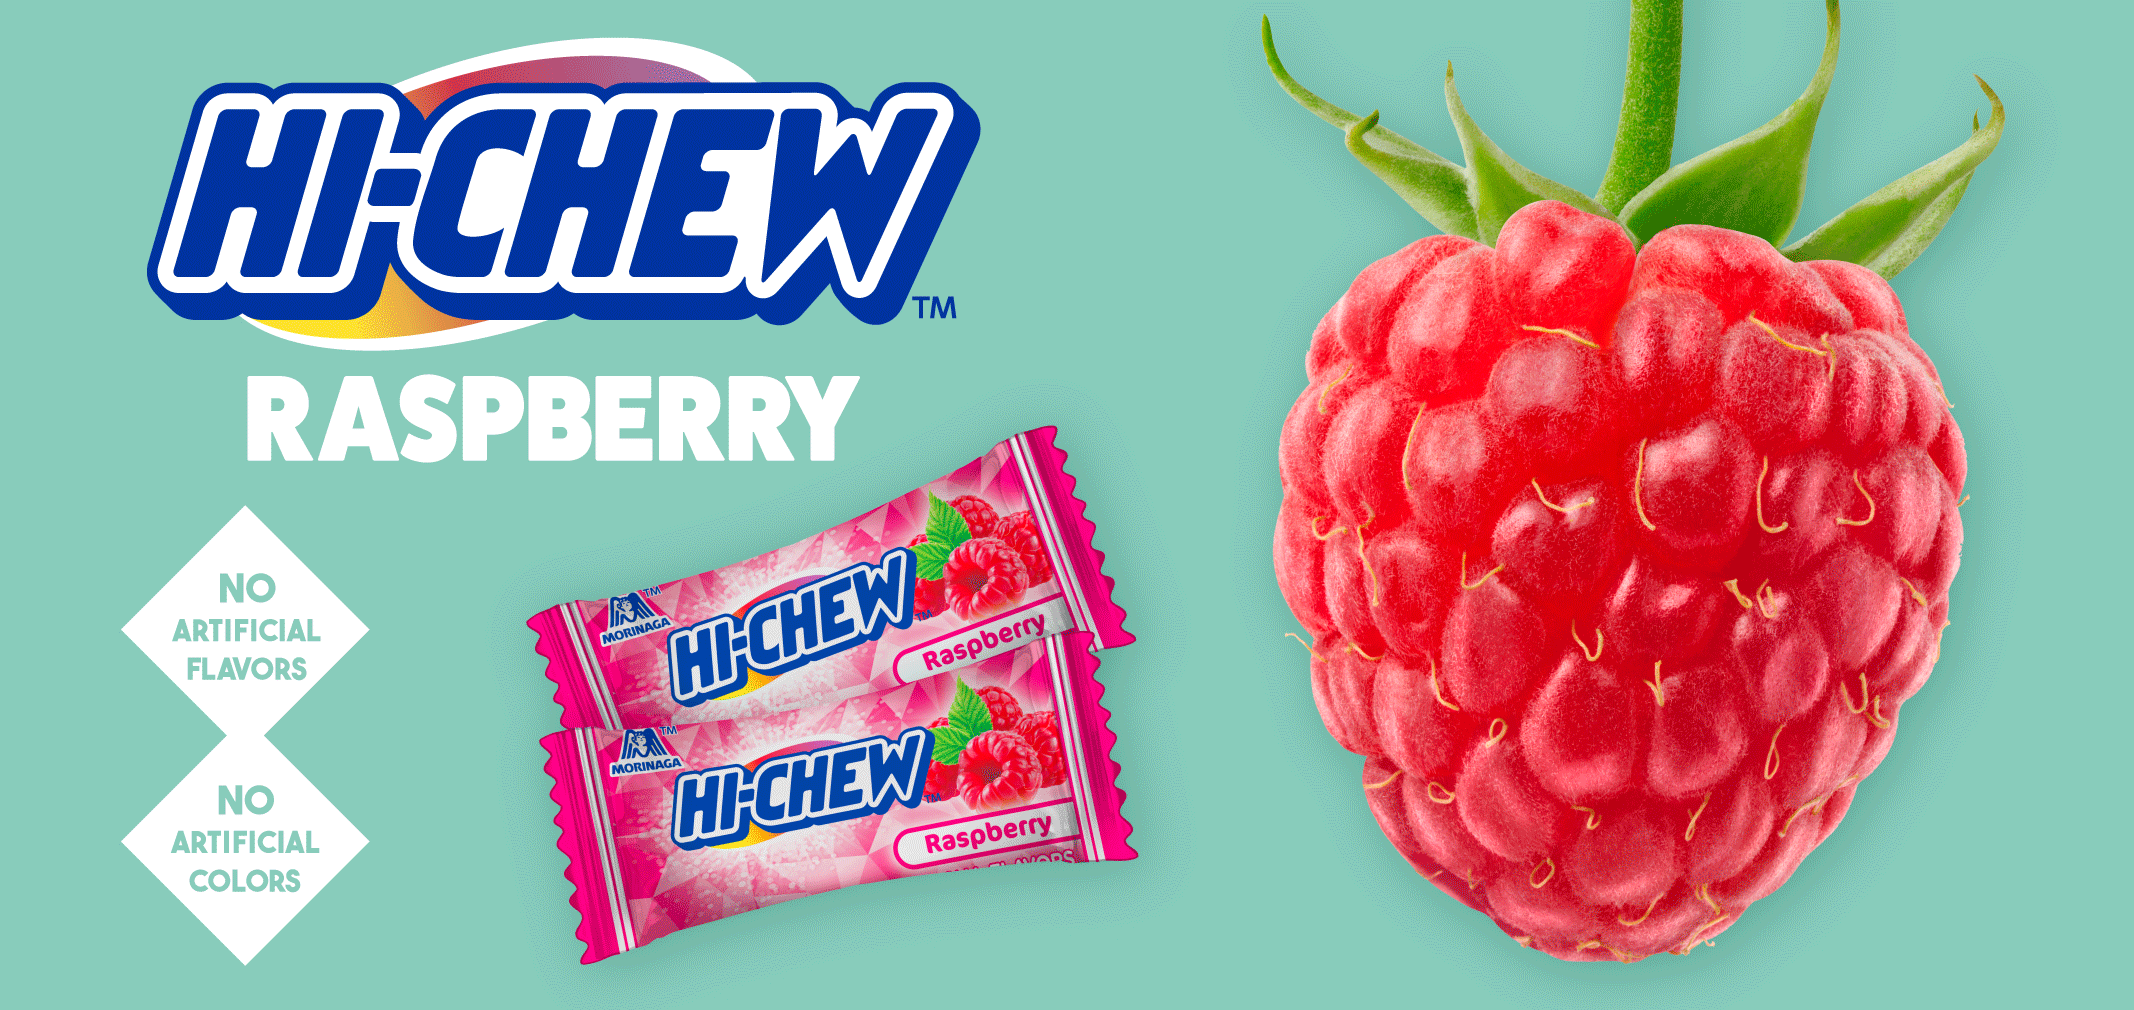 HI-CHEW raspberry label image